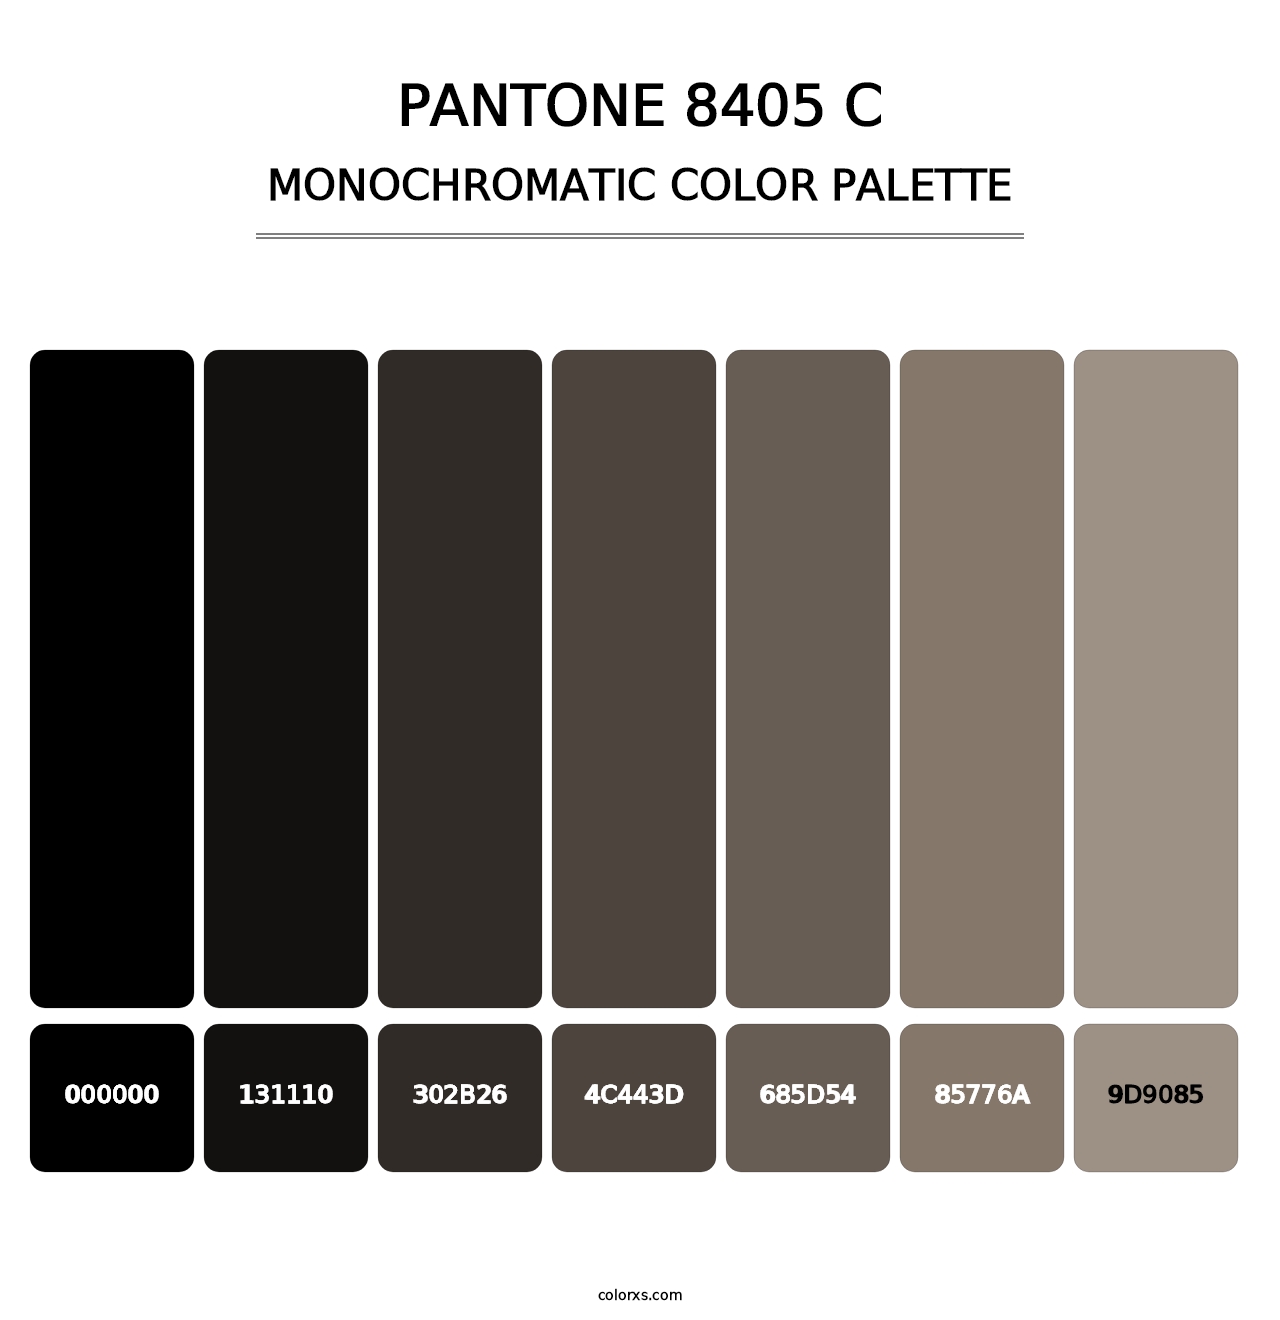 PANTONE 8405 C - Monochromatic Color Palette